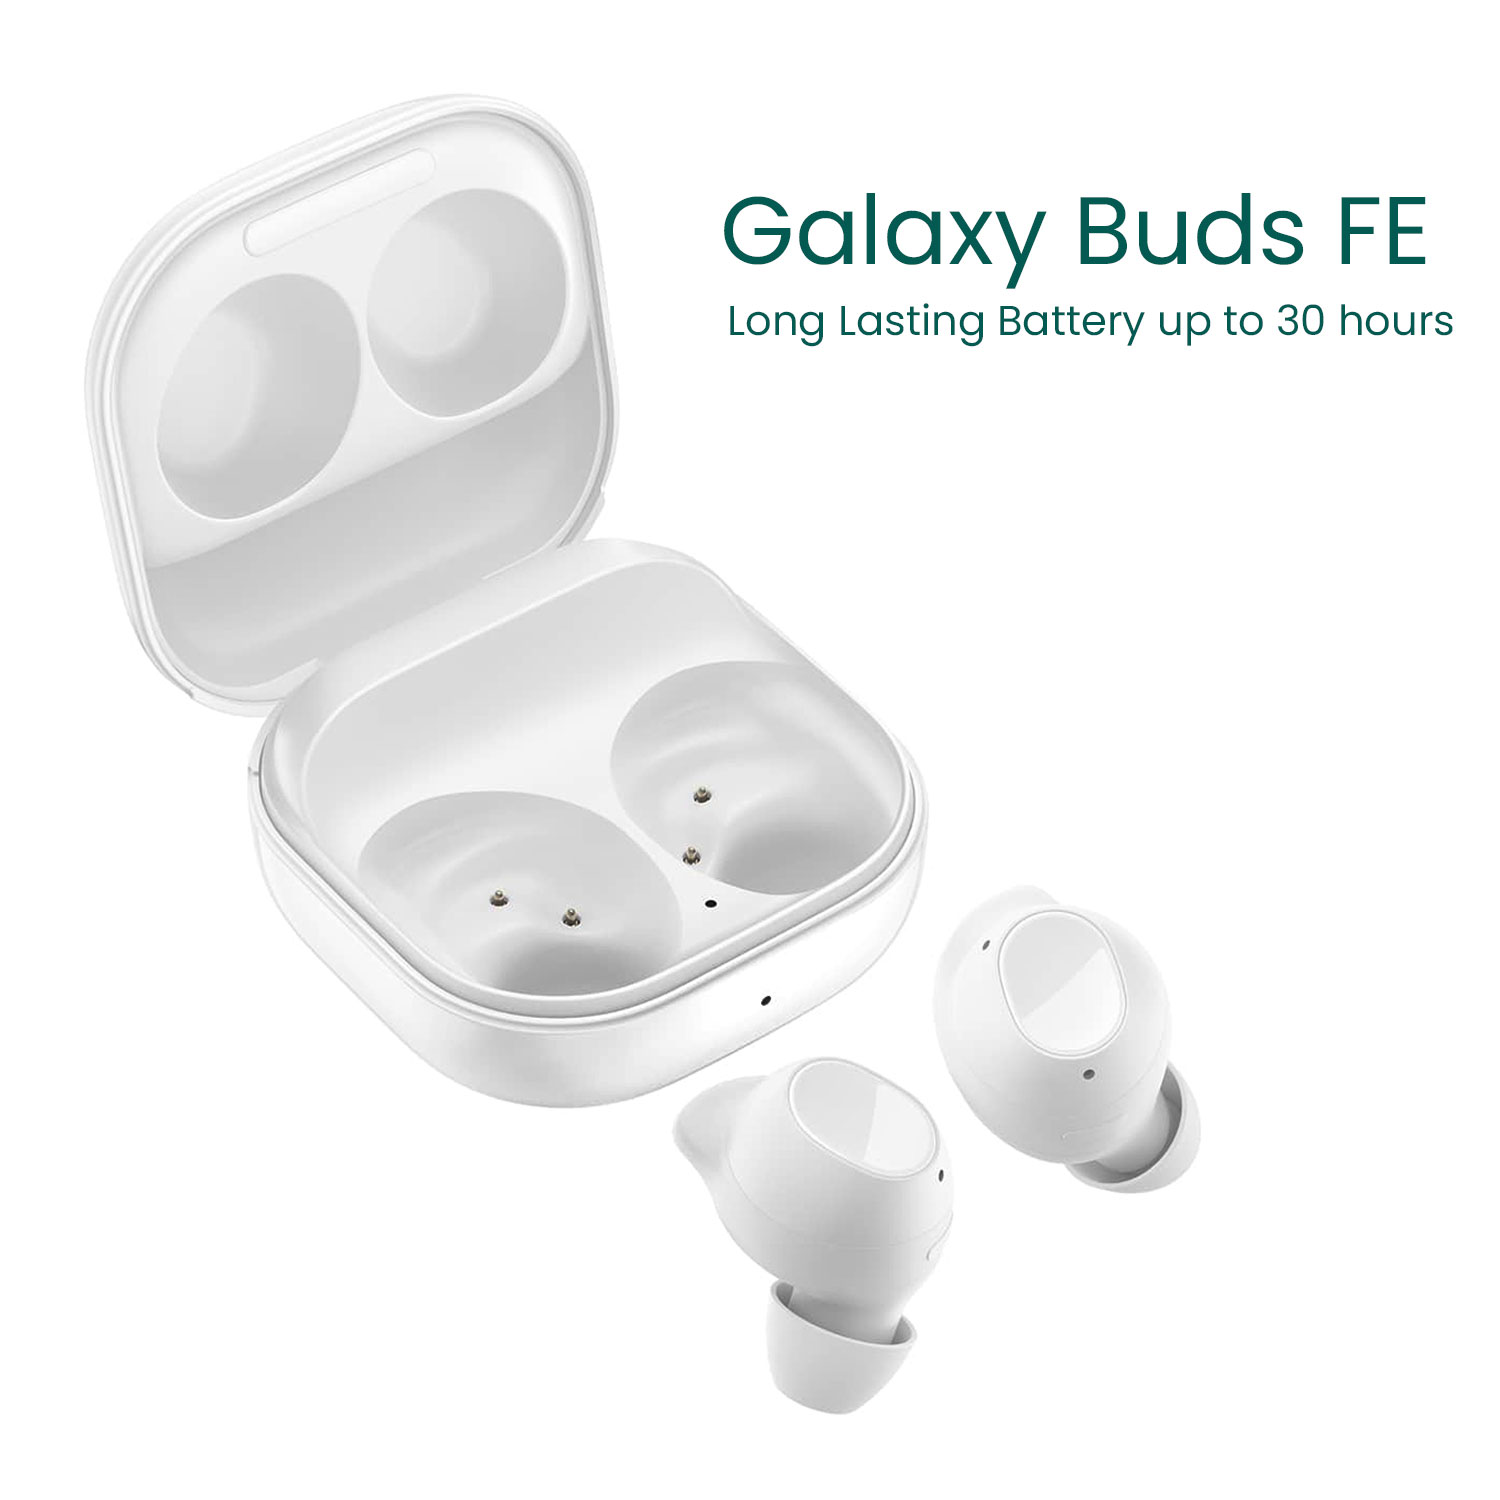 New Samsung Galaxy Buds FE True Wireless Bluetooth Earbuds Sm-r400n 